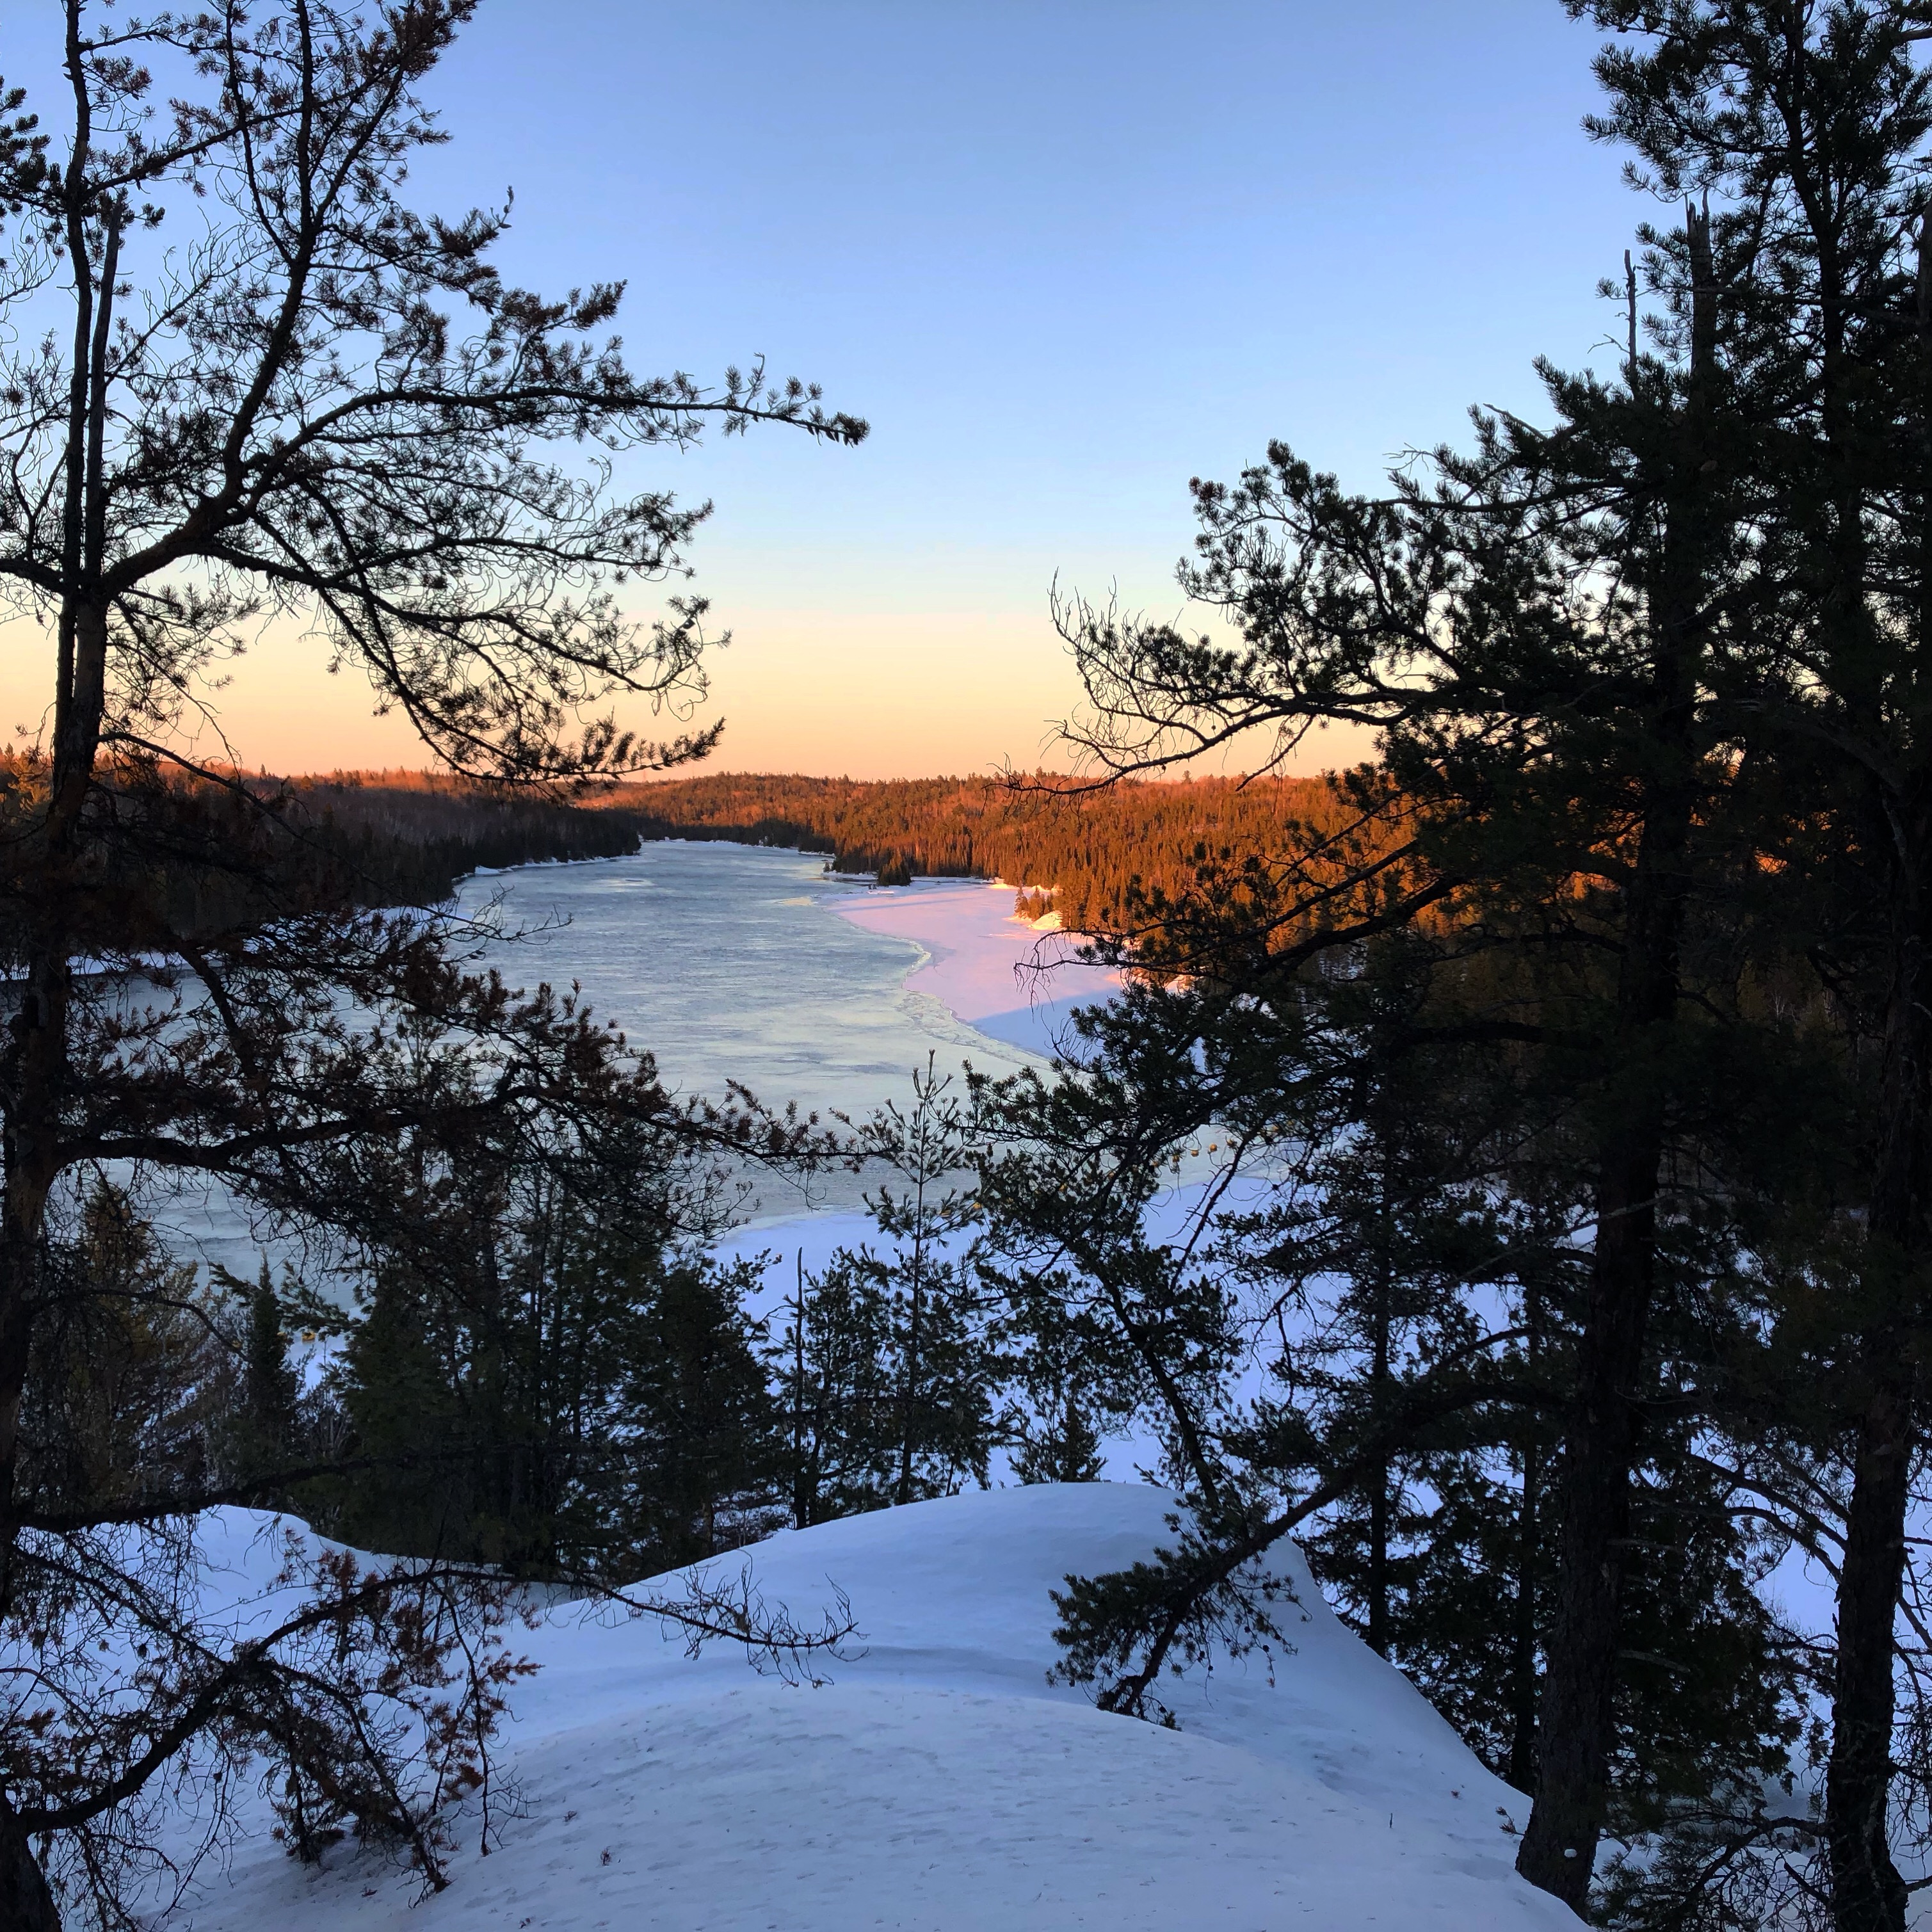 Les sentiers de raquette Récré-eau des Quinze se trouvent au Témiscamingue. La vue depuis la colline au coucher du soleil est magnifique, comme sur la photo.